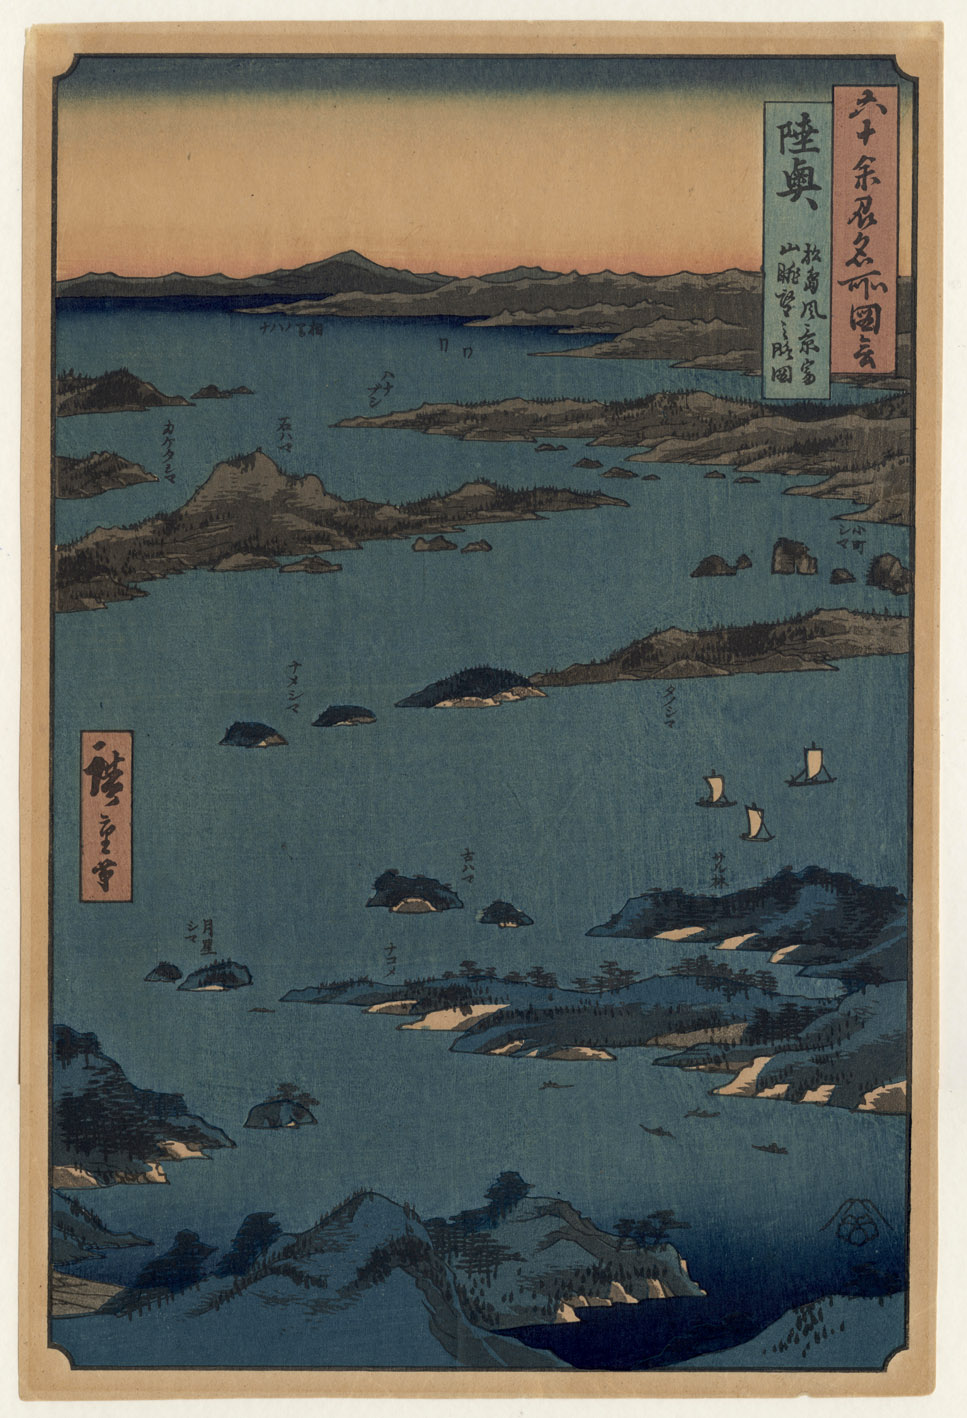 Prints and Principles: After Utagawa Hiroshige's woodblock print 